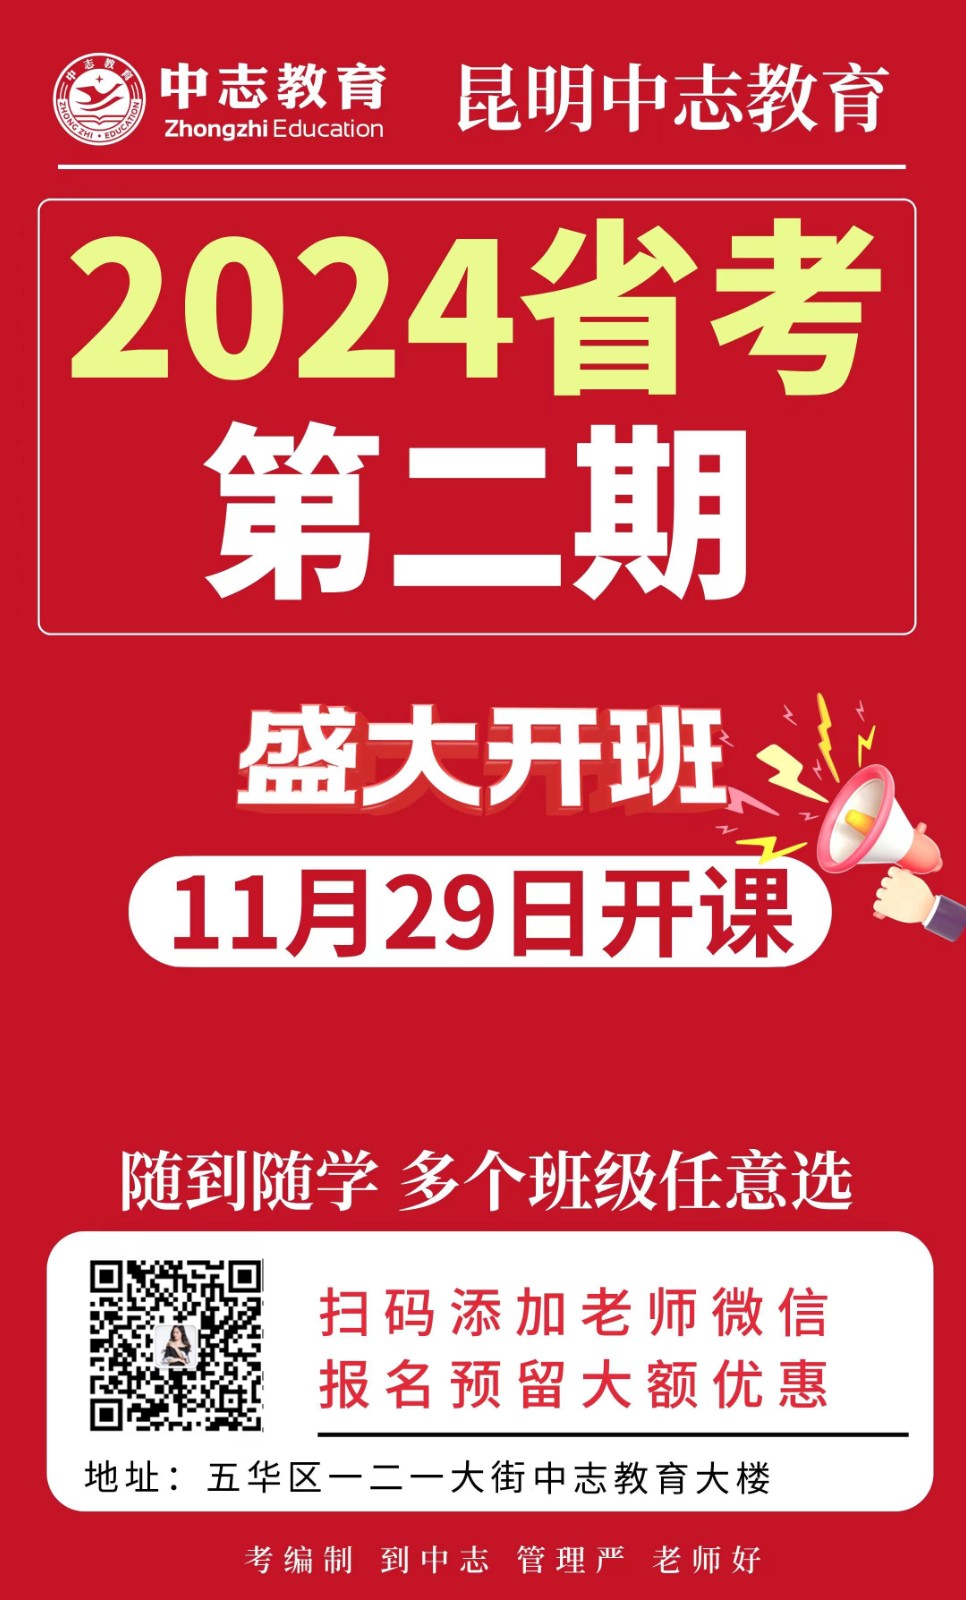 昆明中志教育2024年云南省公务员考试培训11月29日开课